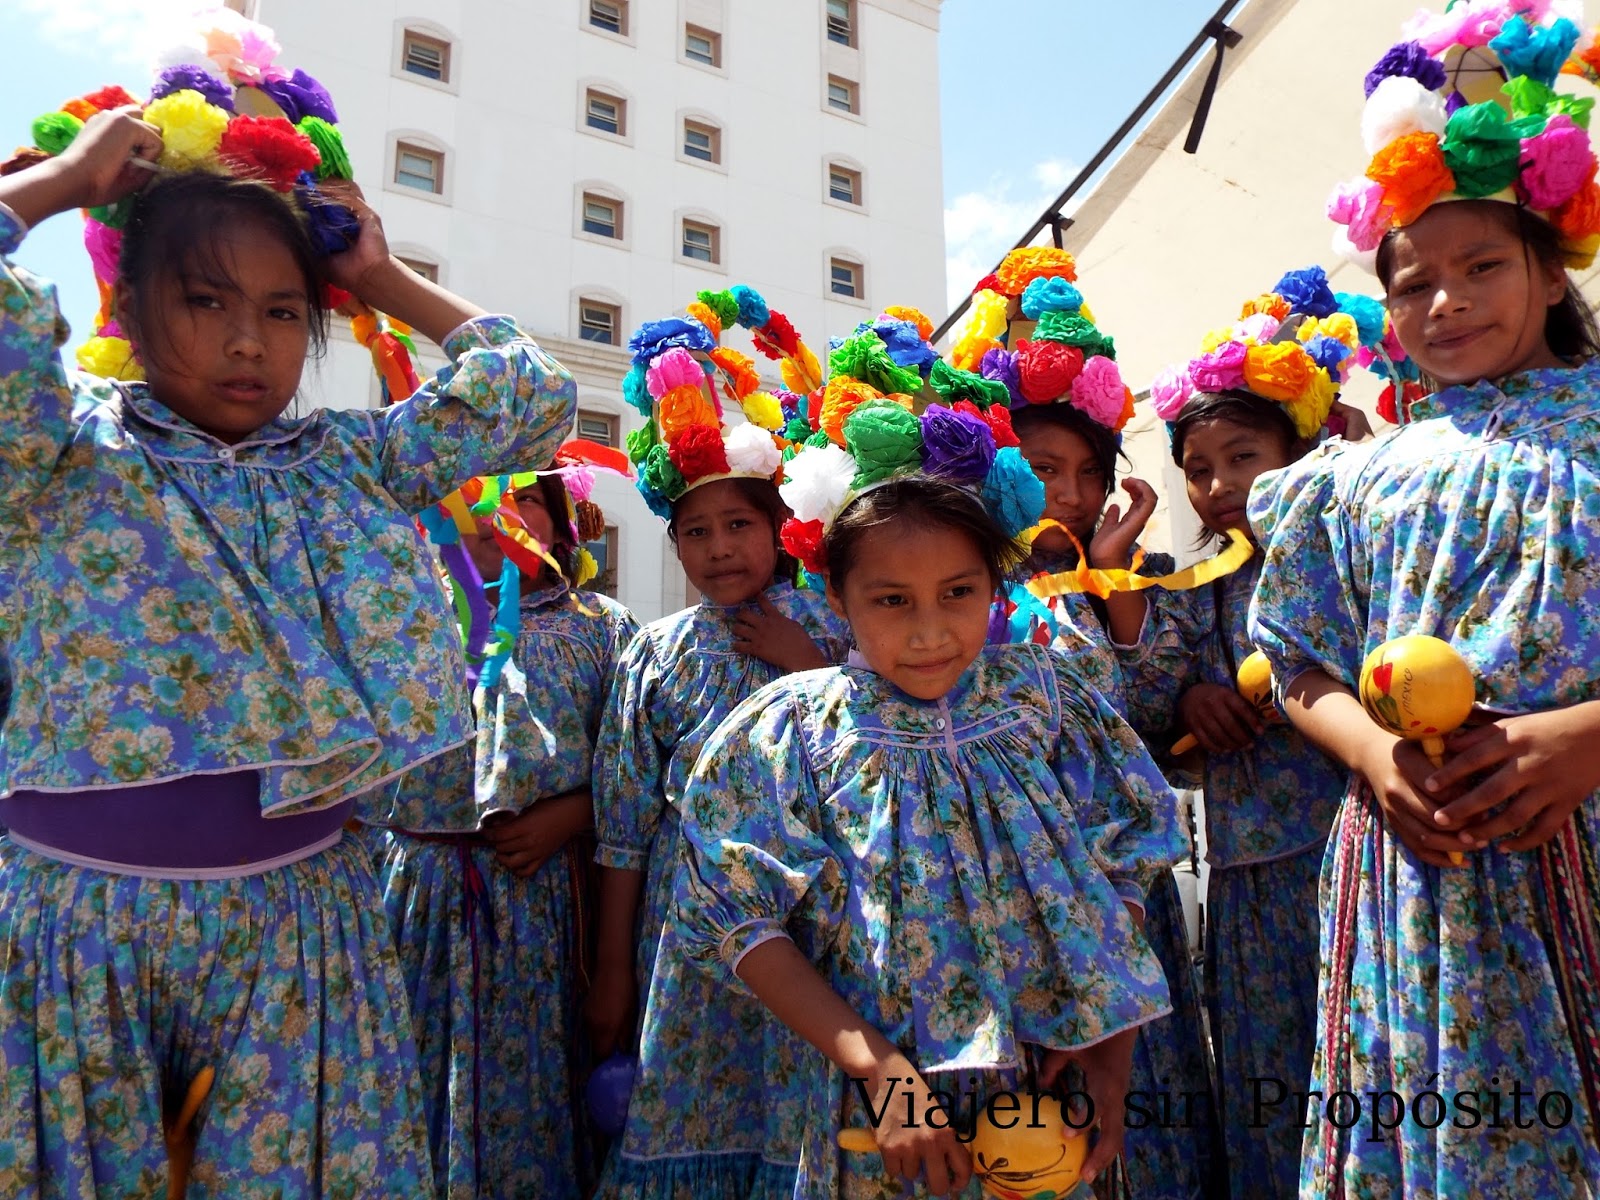 Danzas Tarahumaras Viajero Sin Proposito